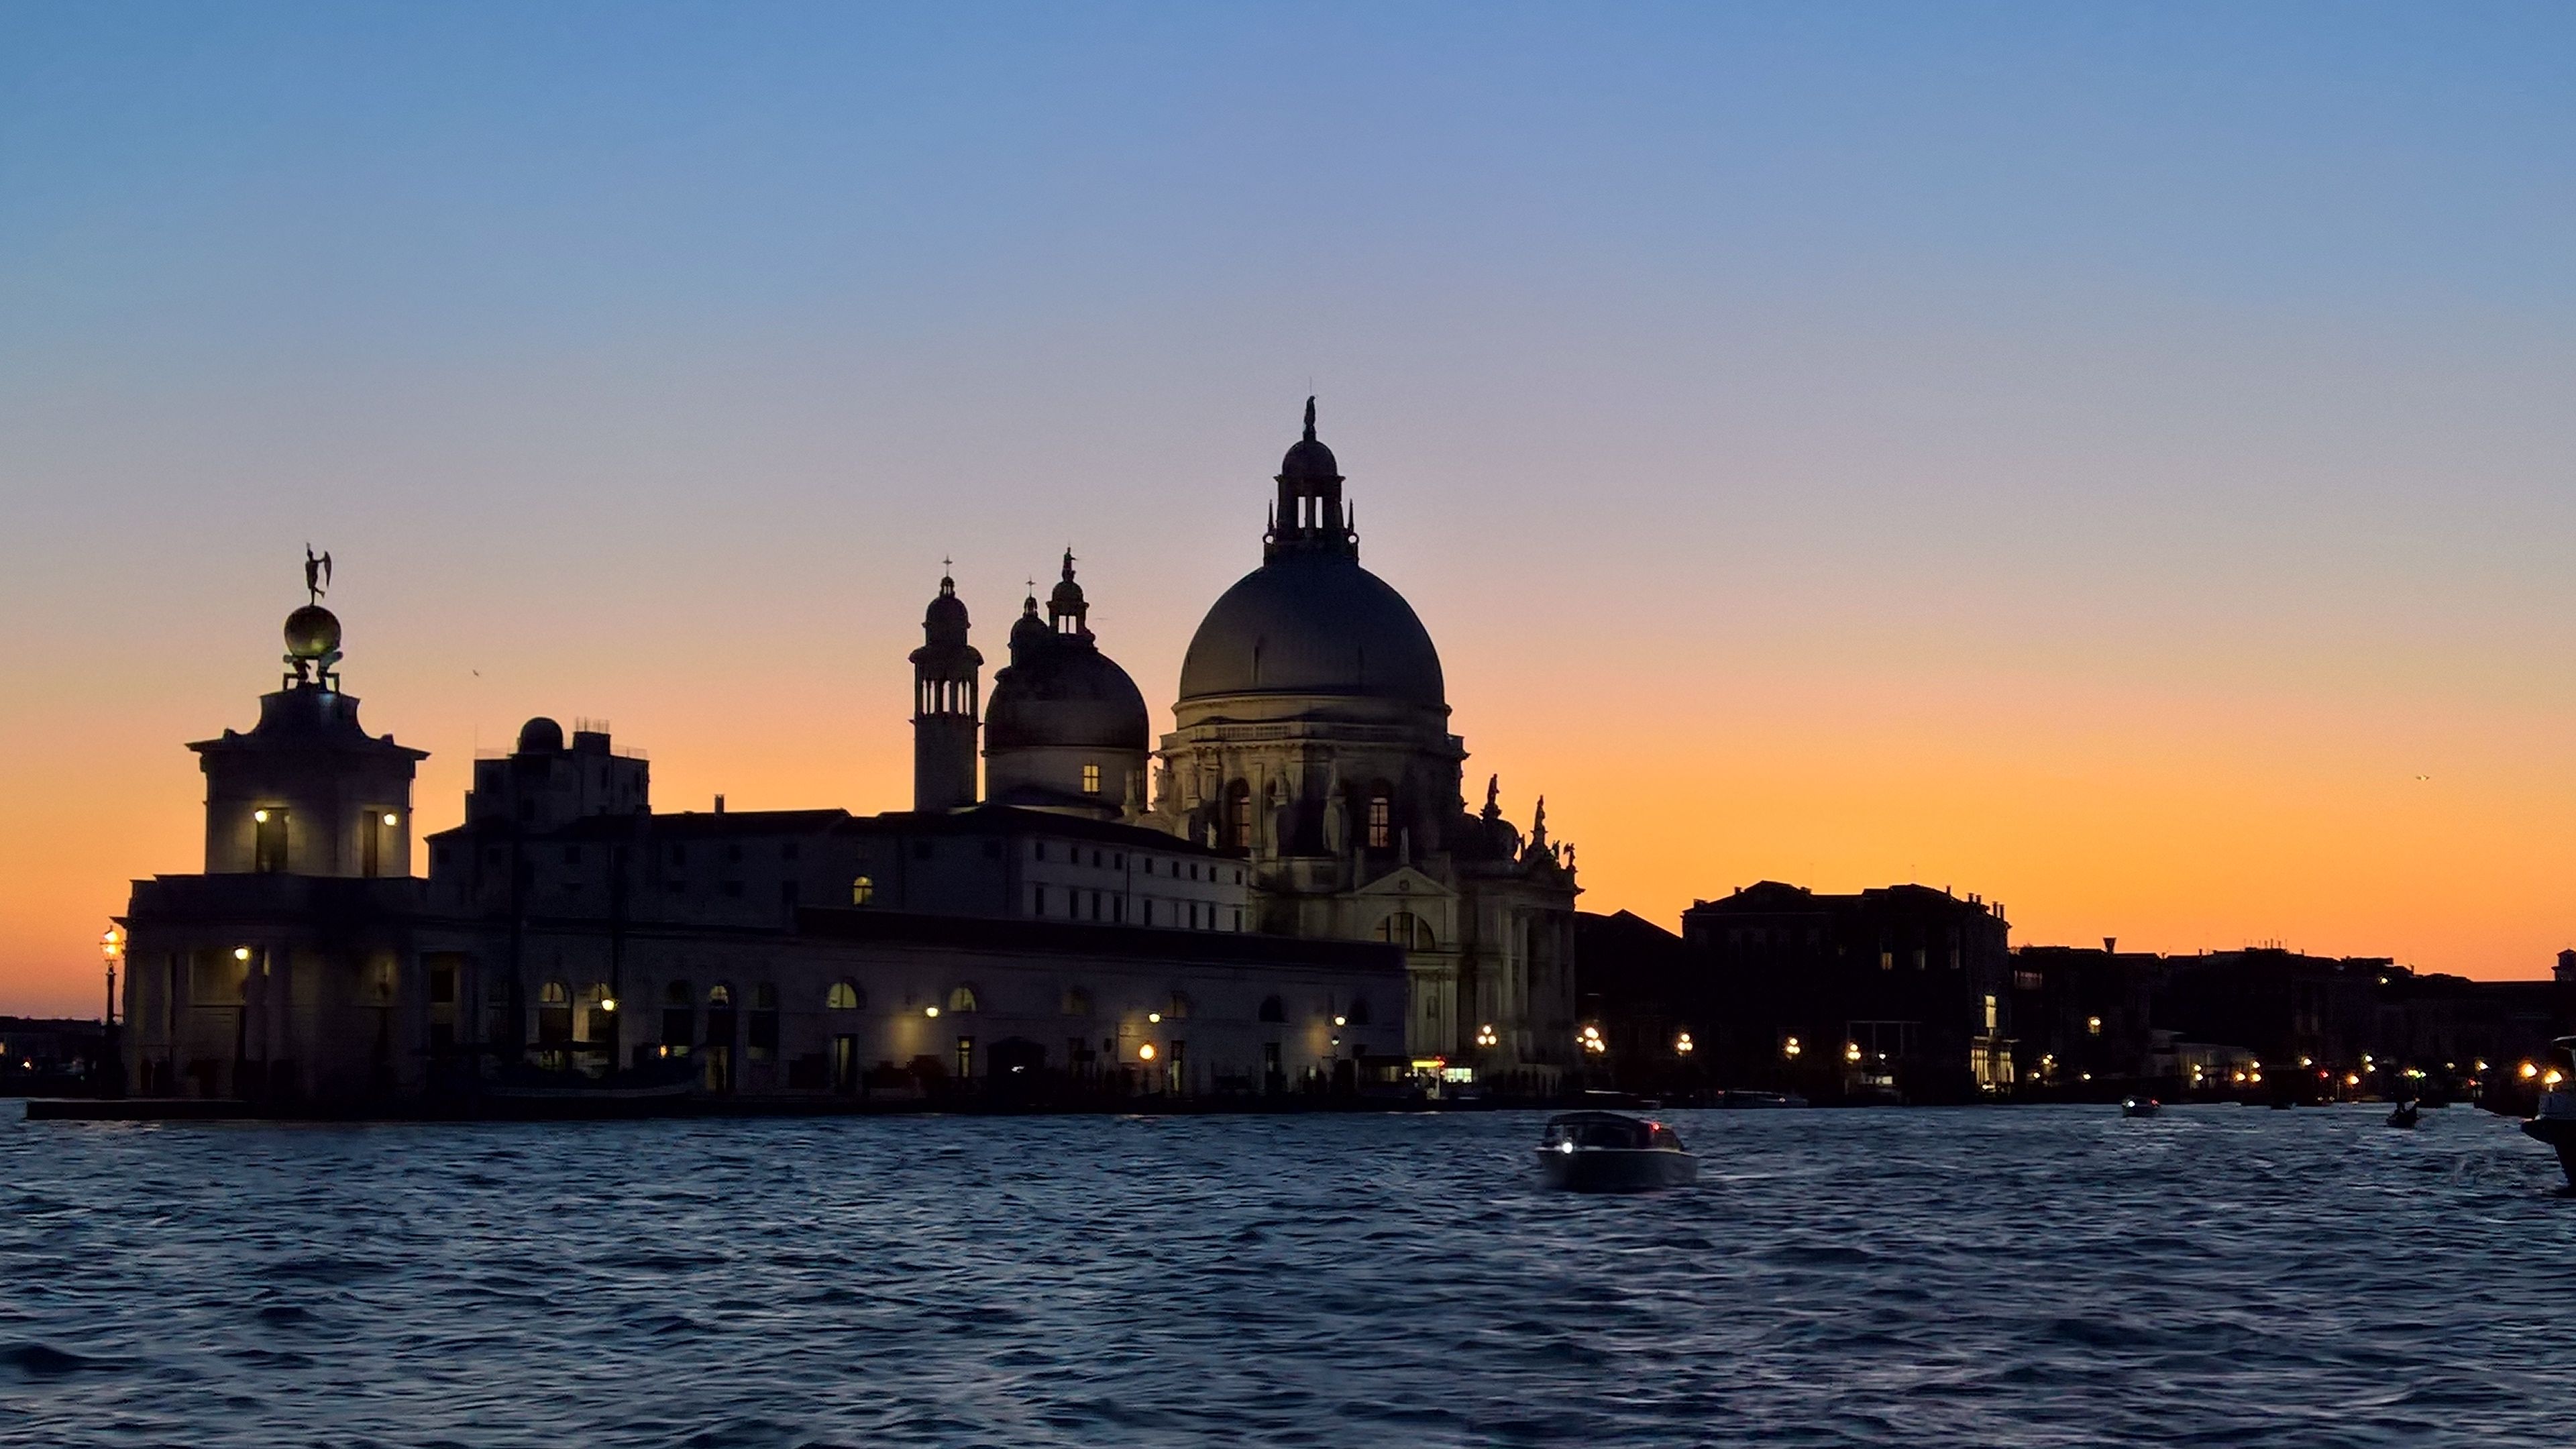 La Salute sur fond de coucher de soleil, Venise